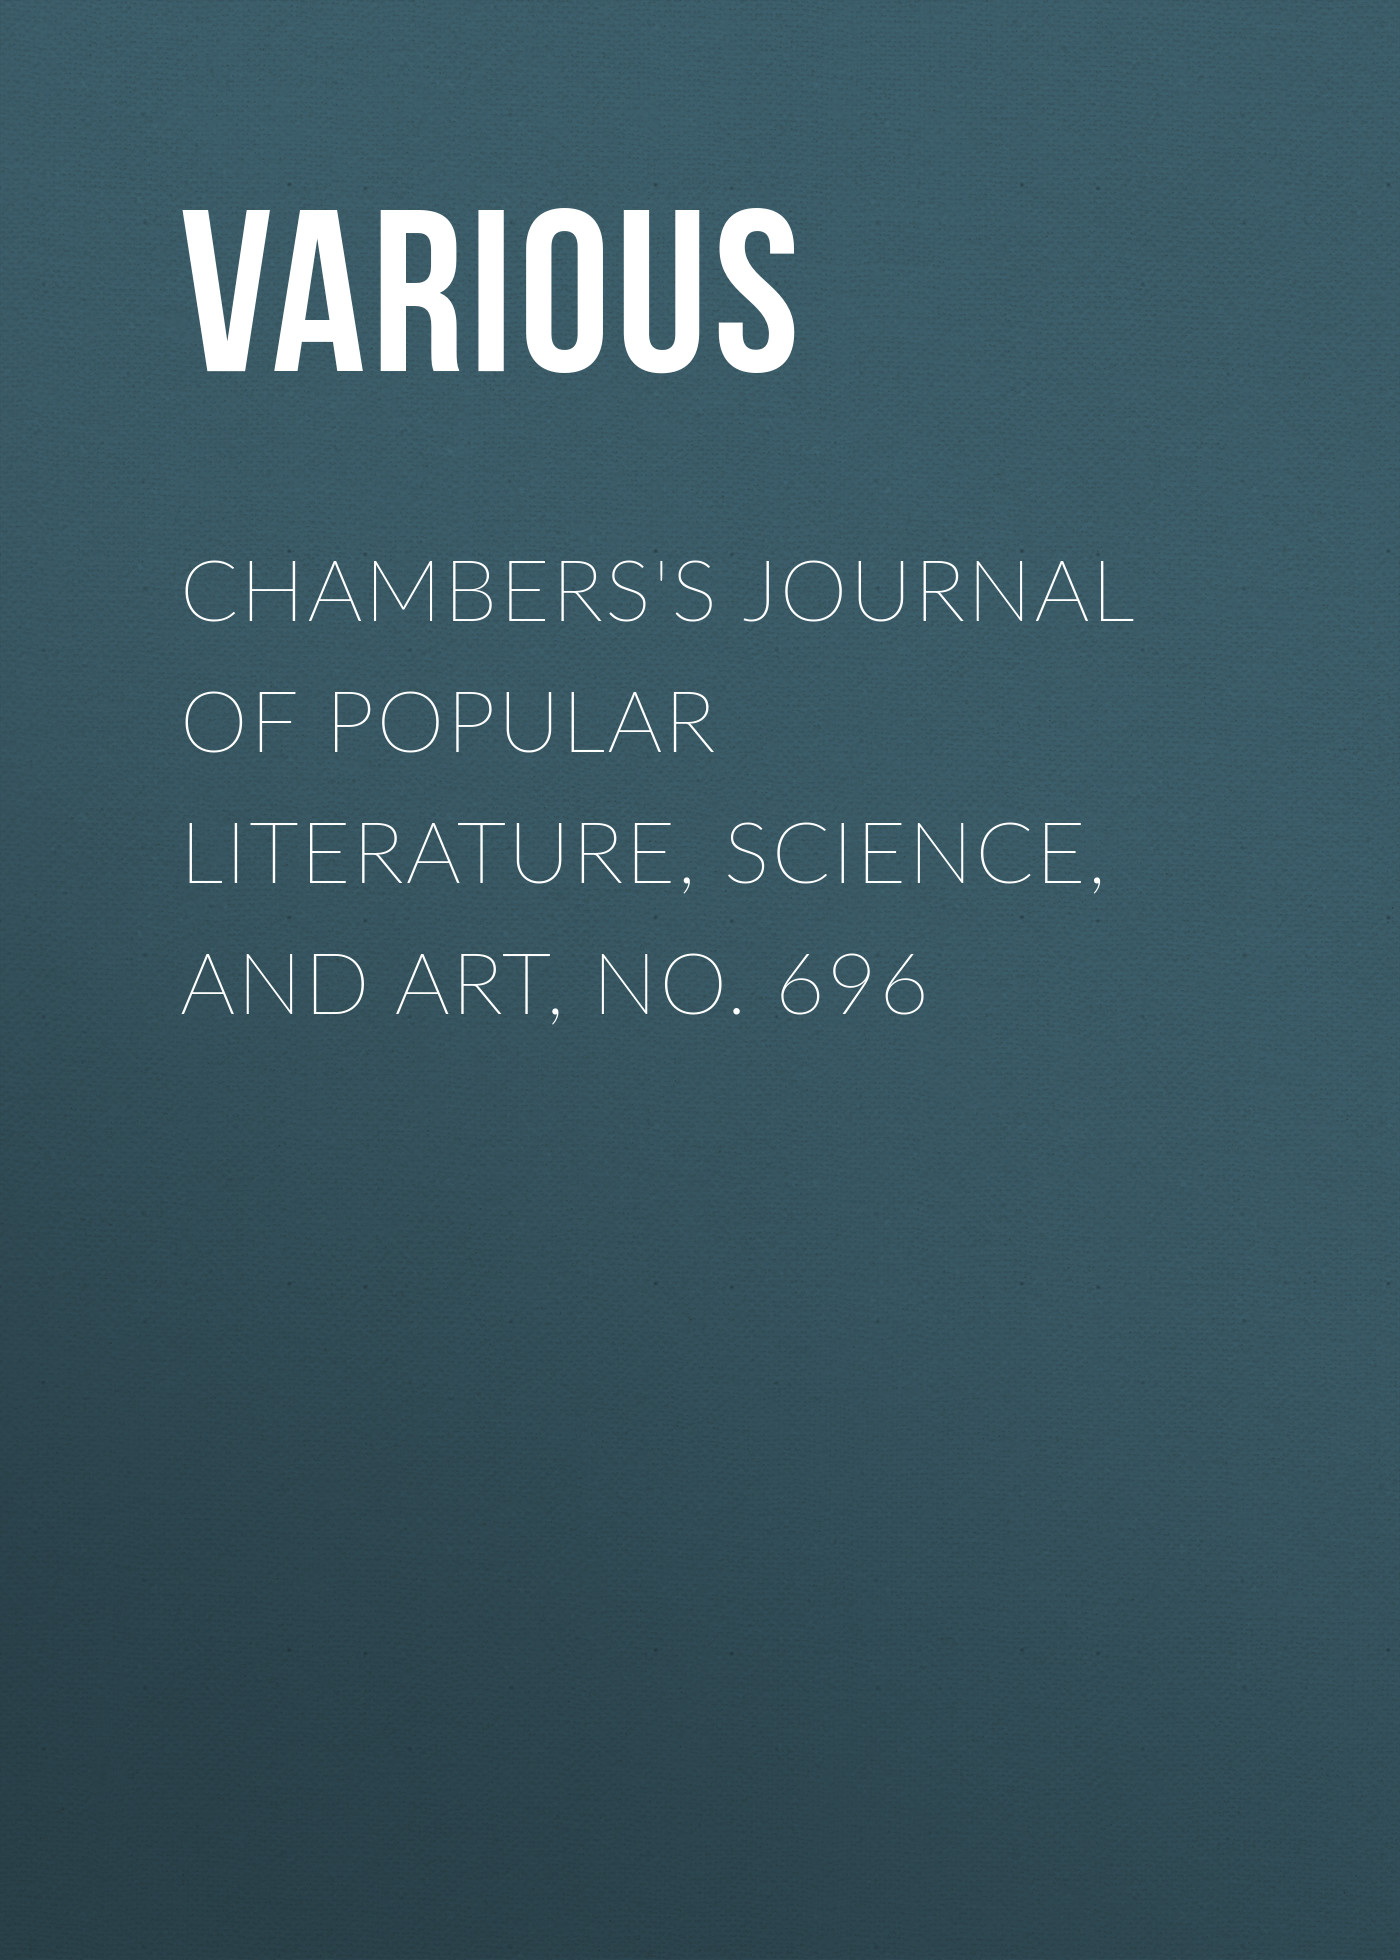 Книга Chambers's Journal of Popular Literature, Science, and Art, No. 696 из серии , созданная  Various, может относится к жанру Журналы, Зарубежная образовательная литература. Стоимость электронной книги Chambers's Journal of Popular Literature, Science, and Art, No. 696 с идентификатором 25569775 составляет 0 руб.